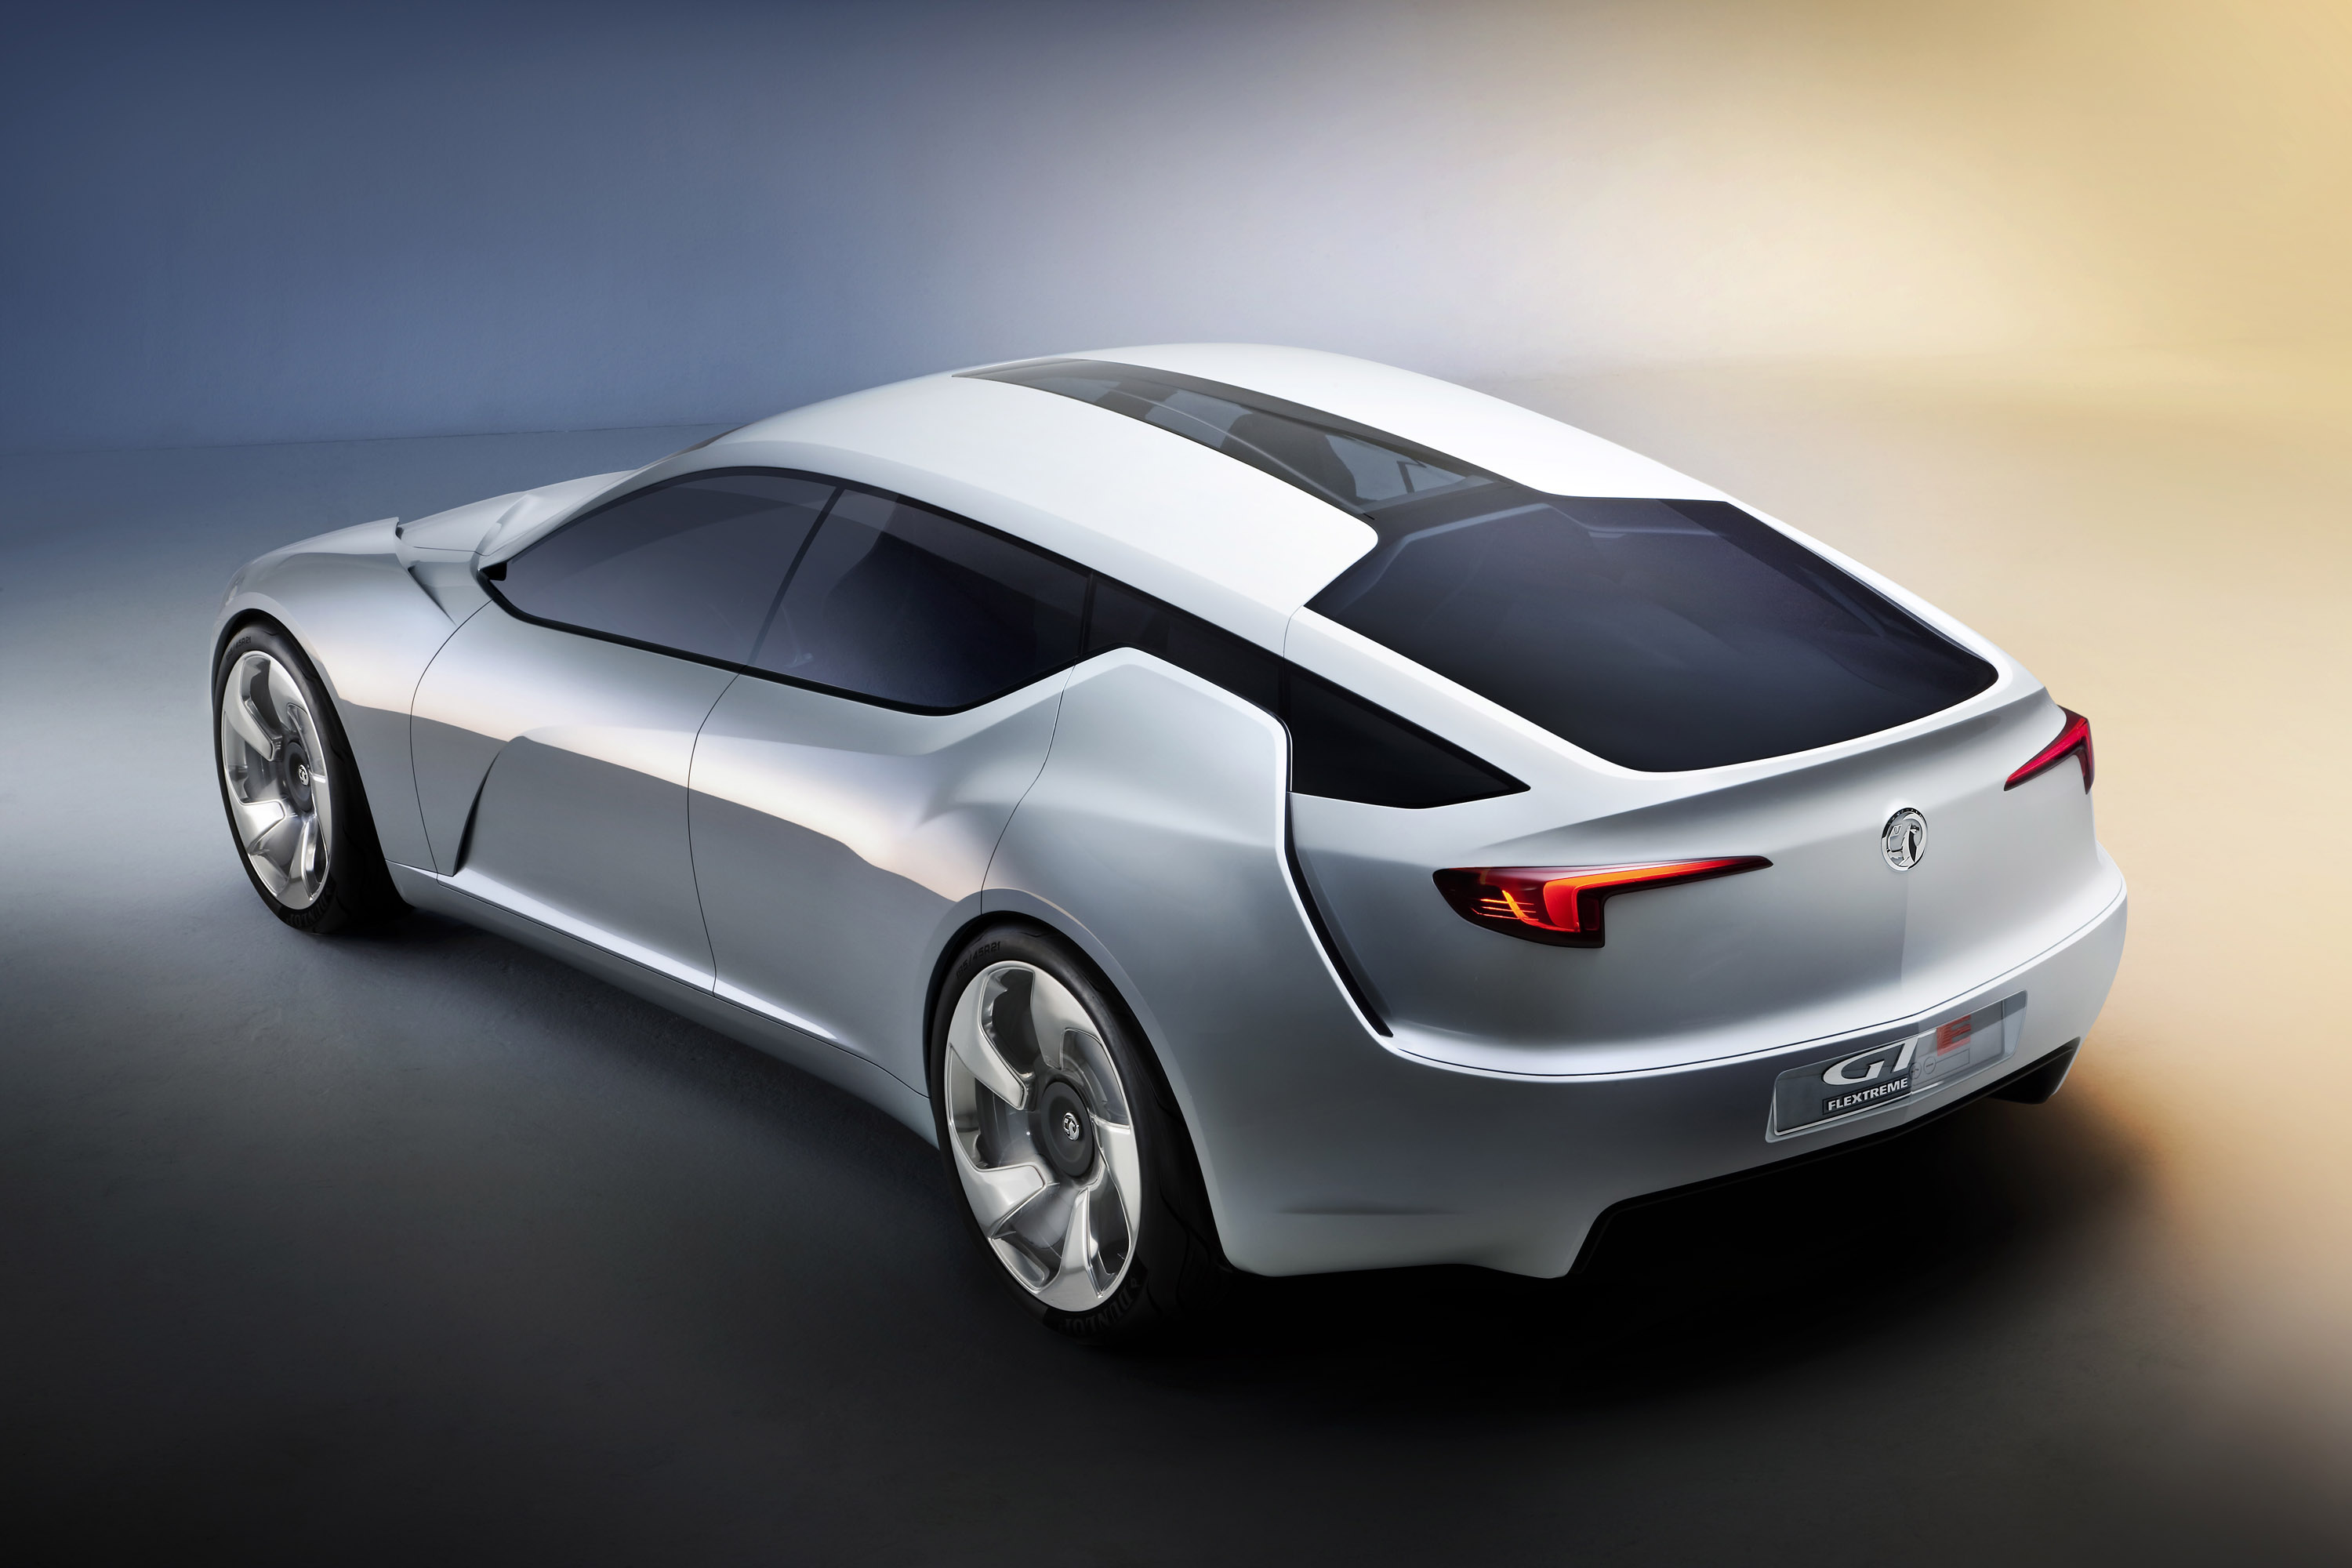 Vauxhall Flextreme GT-E concept